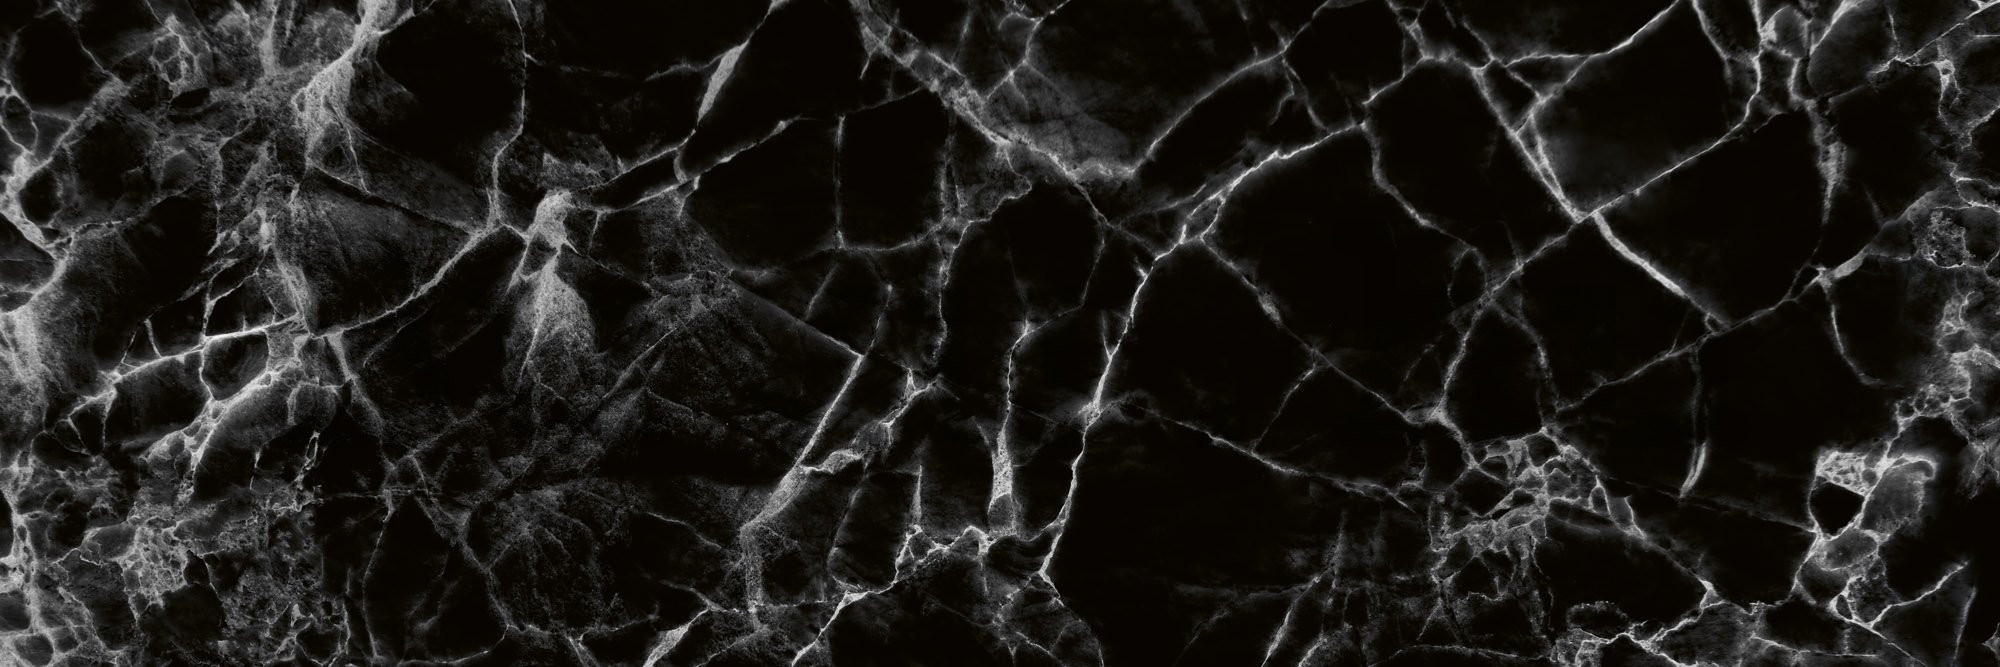 Öntapadós mosható tapéta konyhába - Fekete márvány (2), 180x60 cm